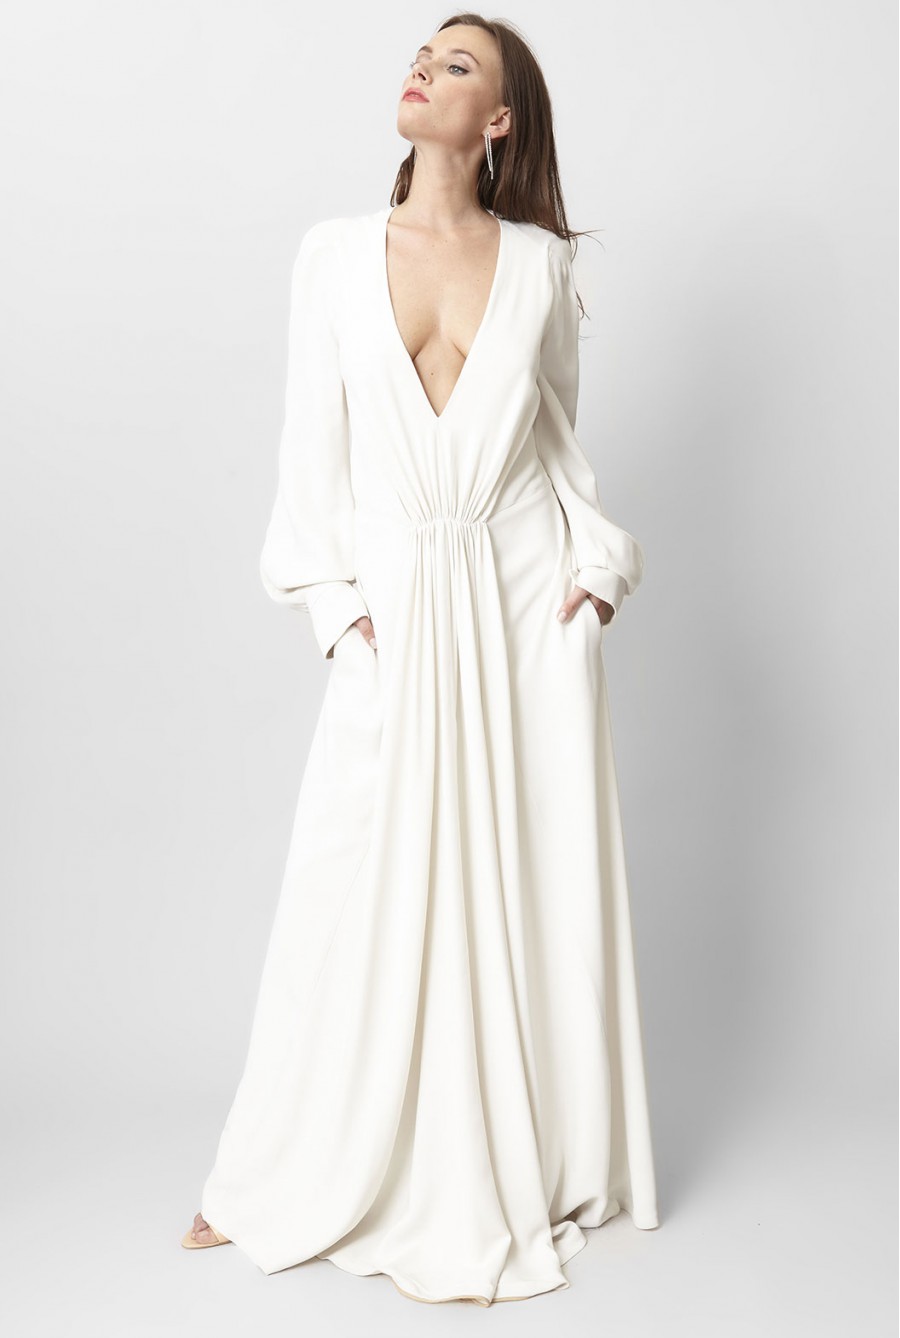 Robe de mariée : comment choisir le bon modèle ?